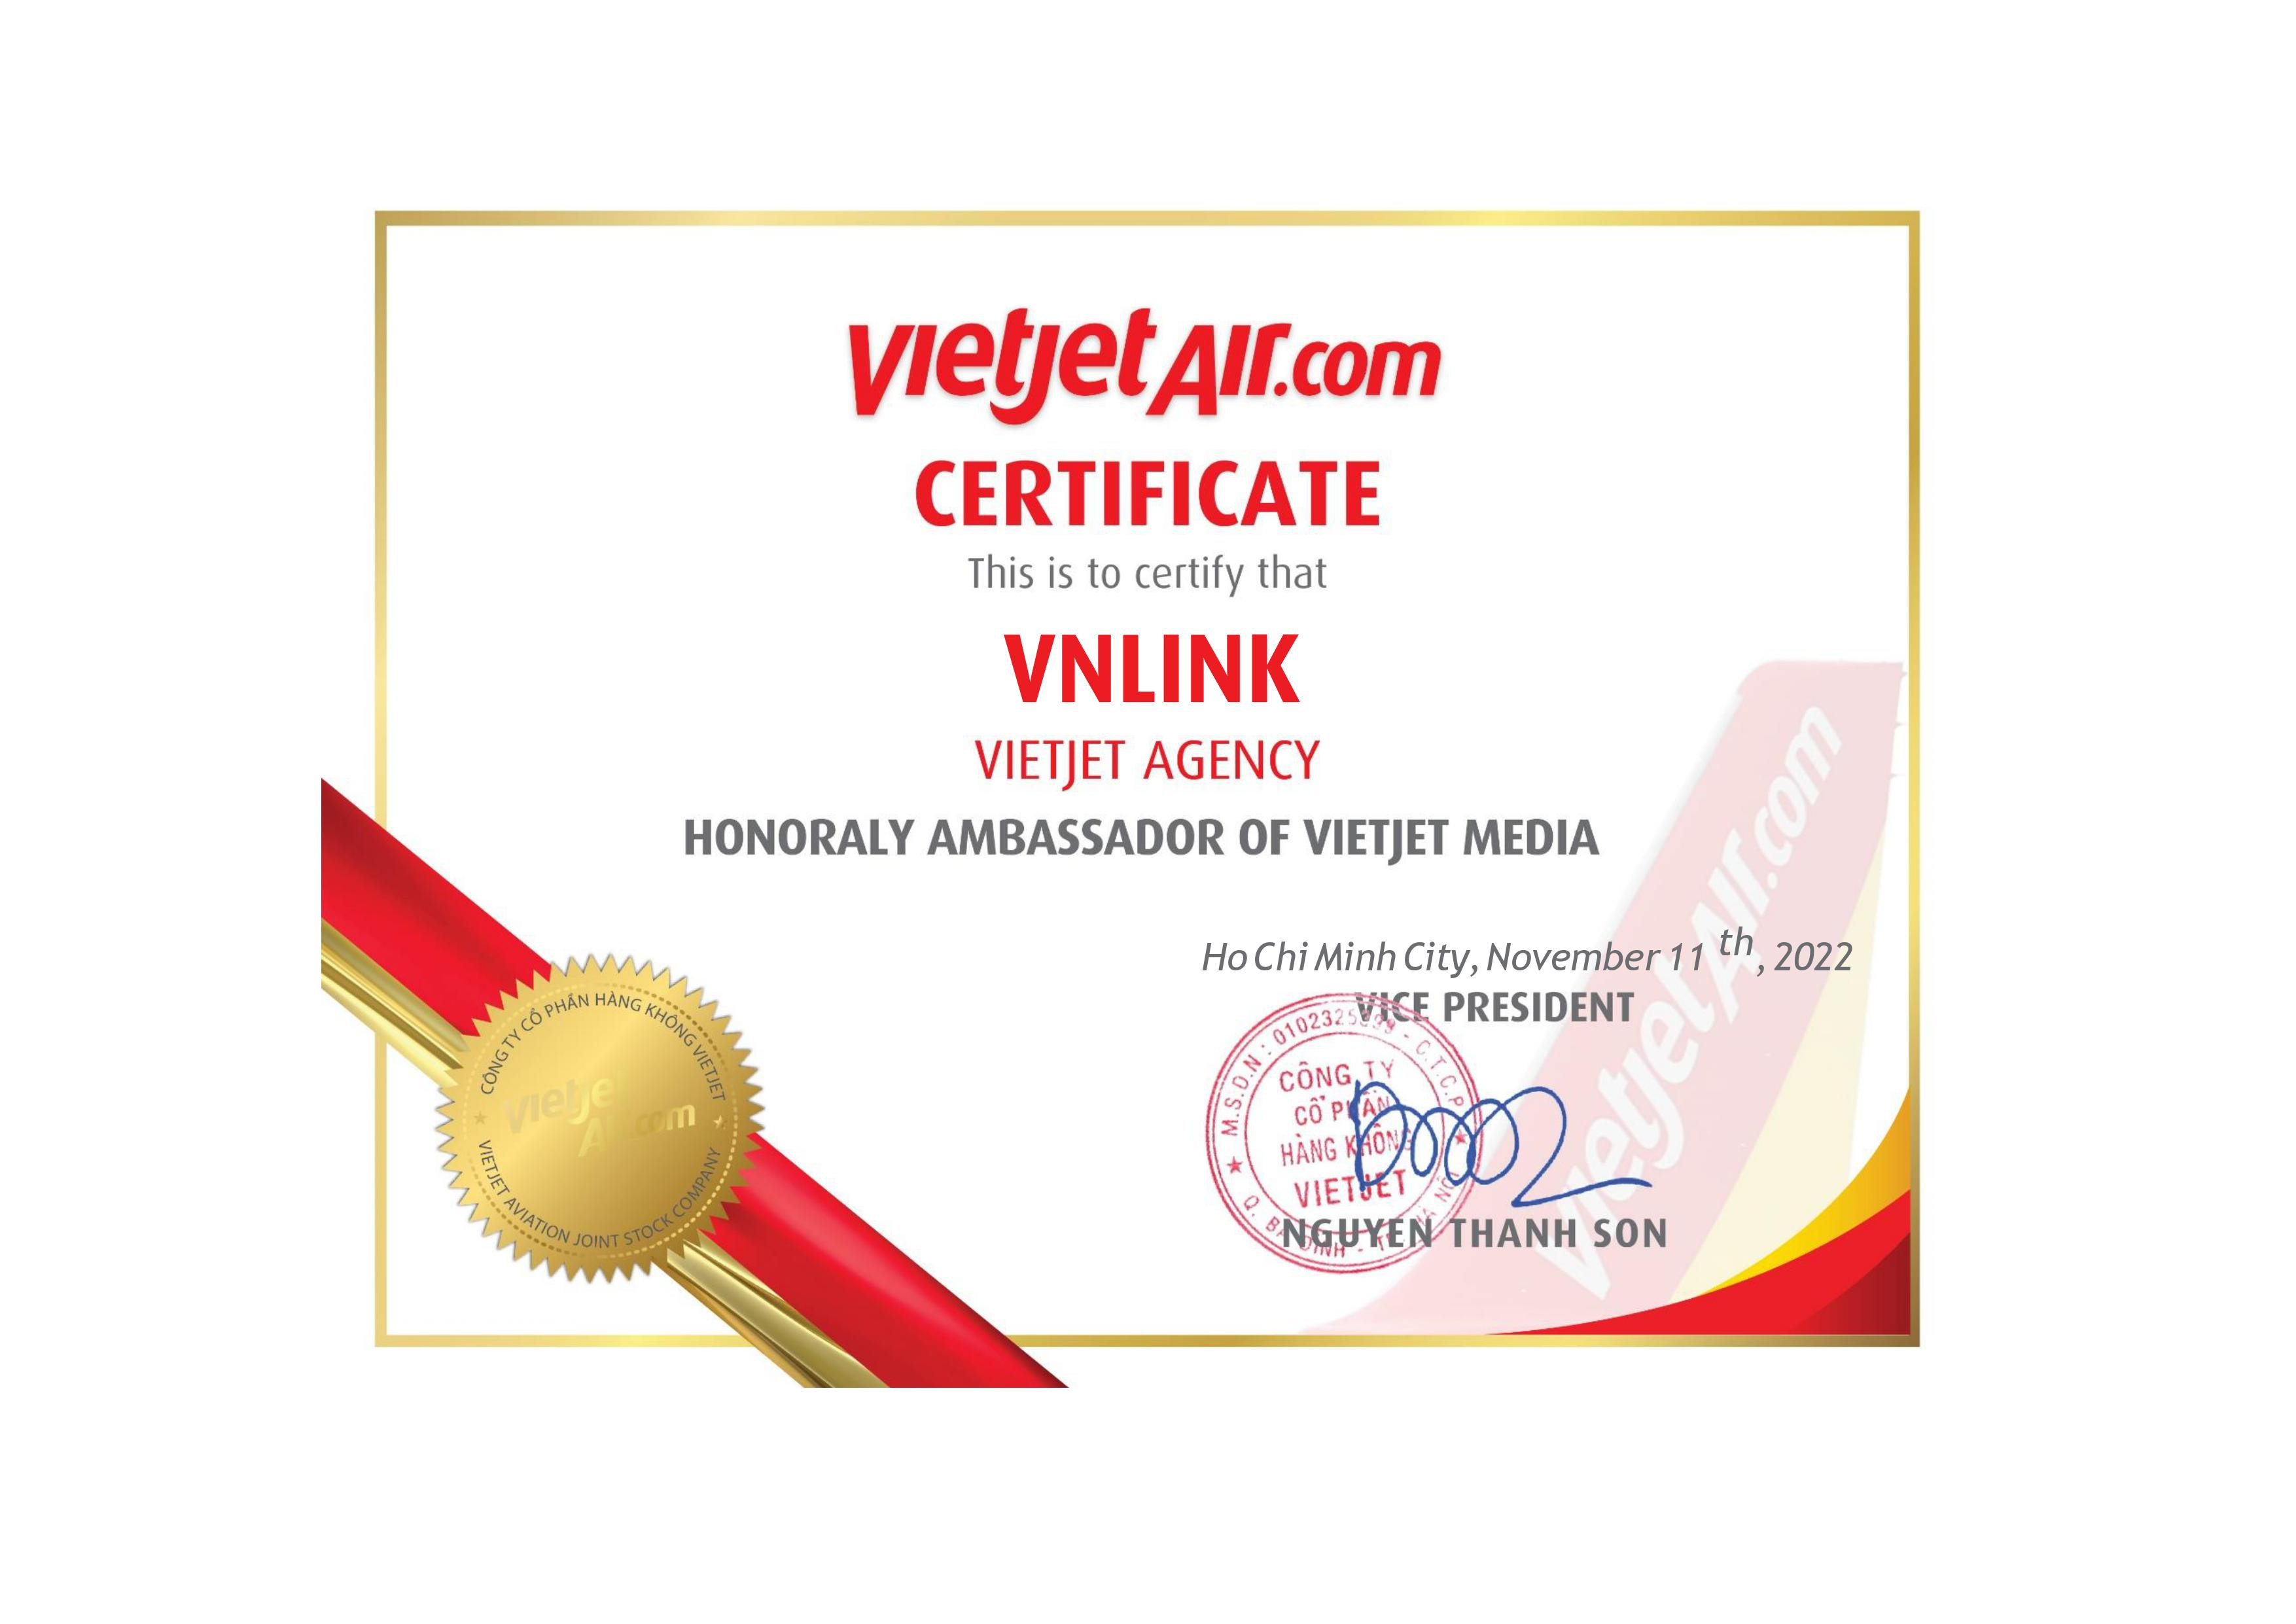 TravelLink tự hào nhận giấy chứng nhận Đại sứ truyền thông của Vietjet.